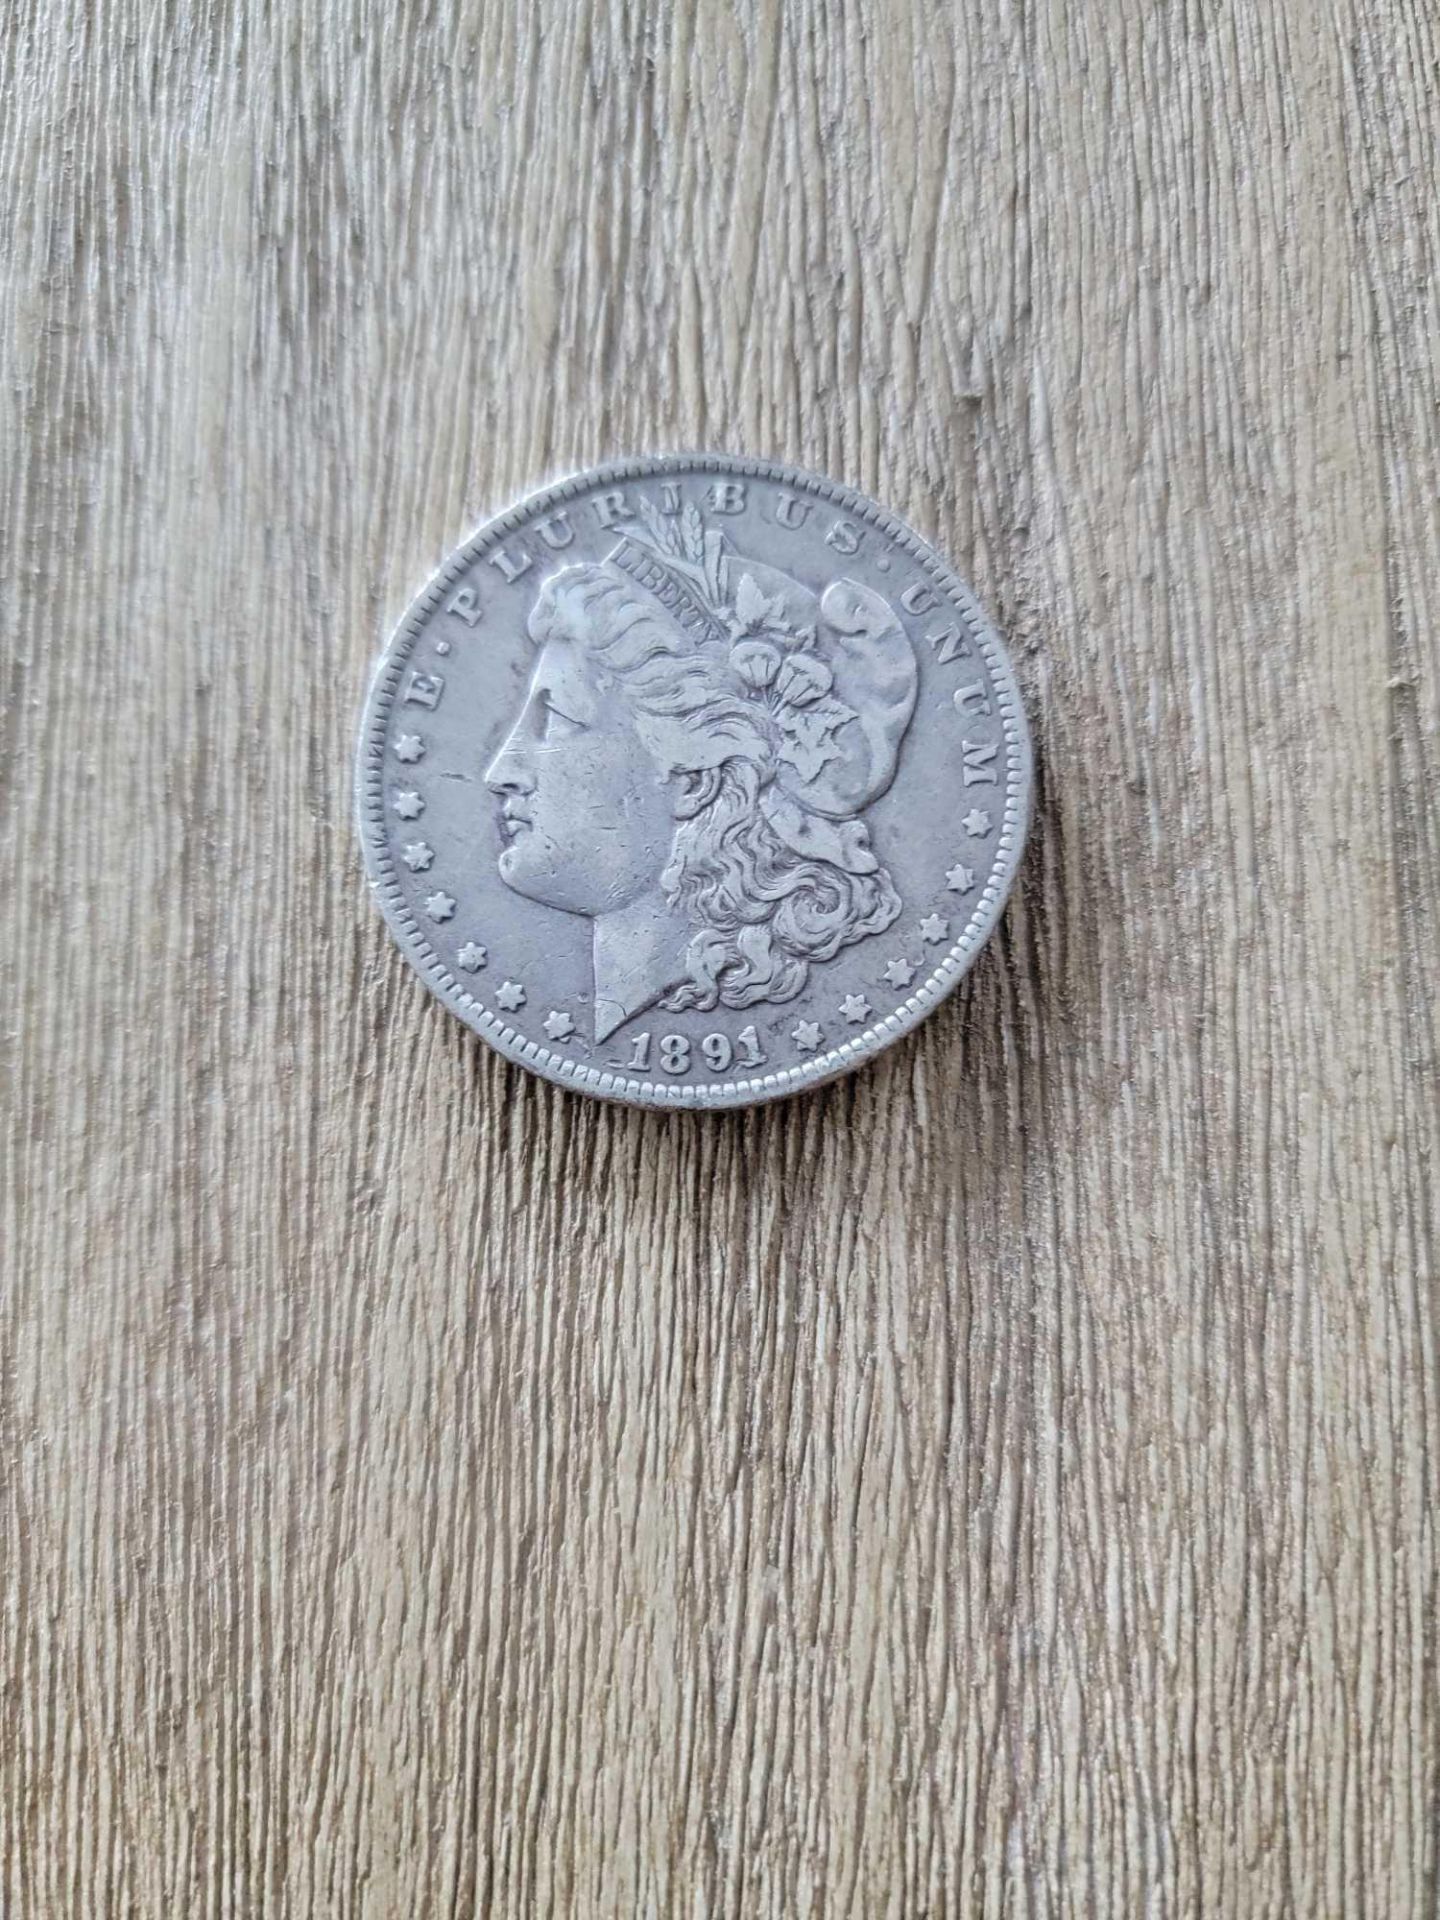 1891 VF Morgan Dollar